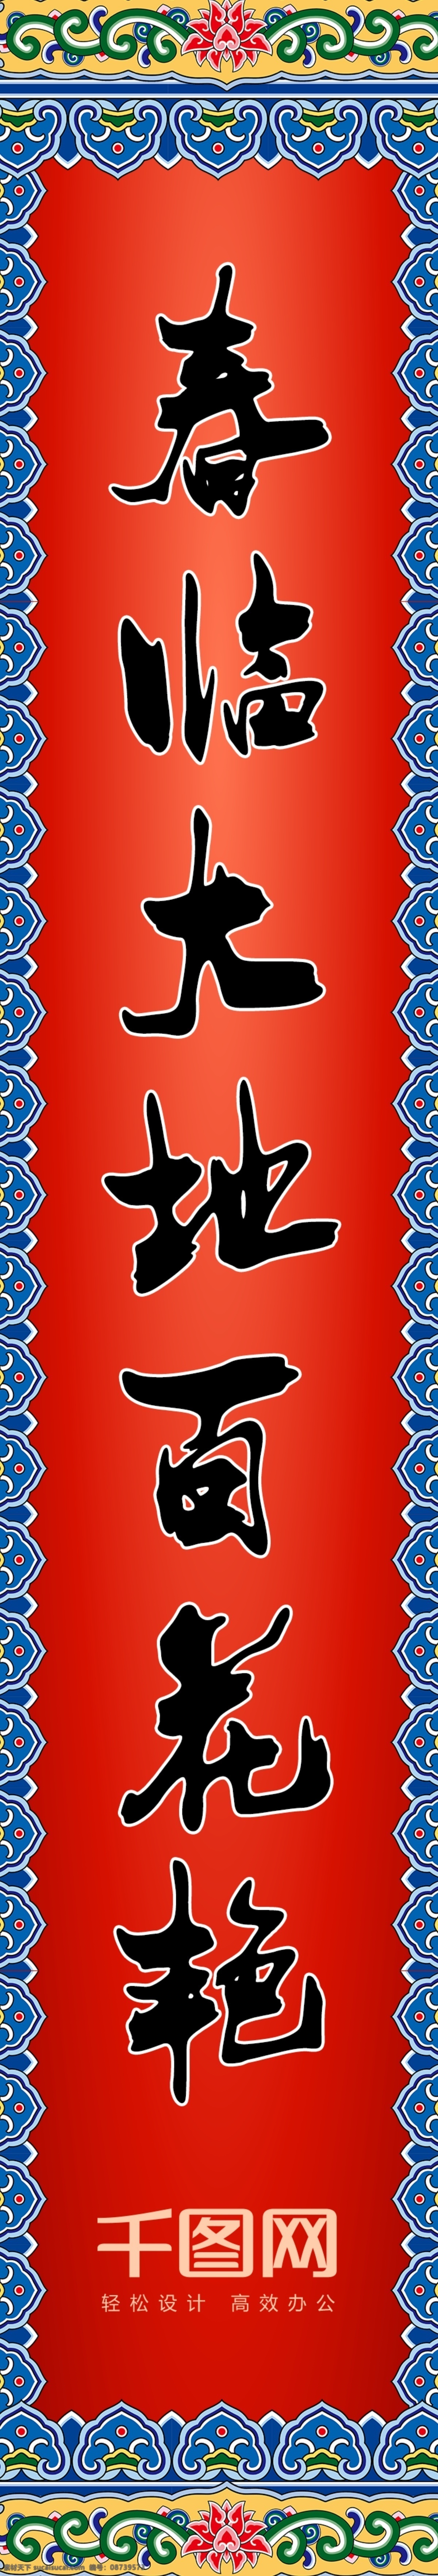 中国 传统节日 春节 过年 喜庆 对联 门头 福 门楼 拱门 美陈 万事如意 新年快乐